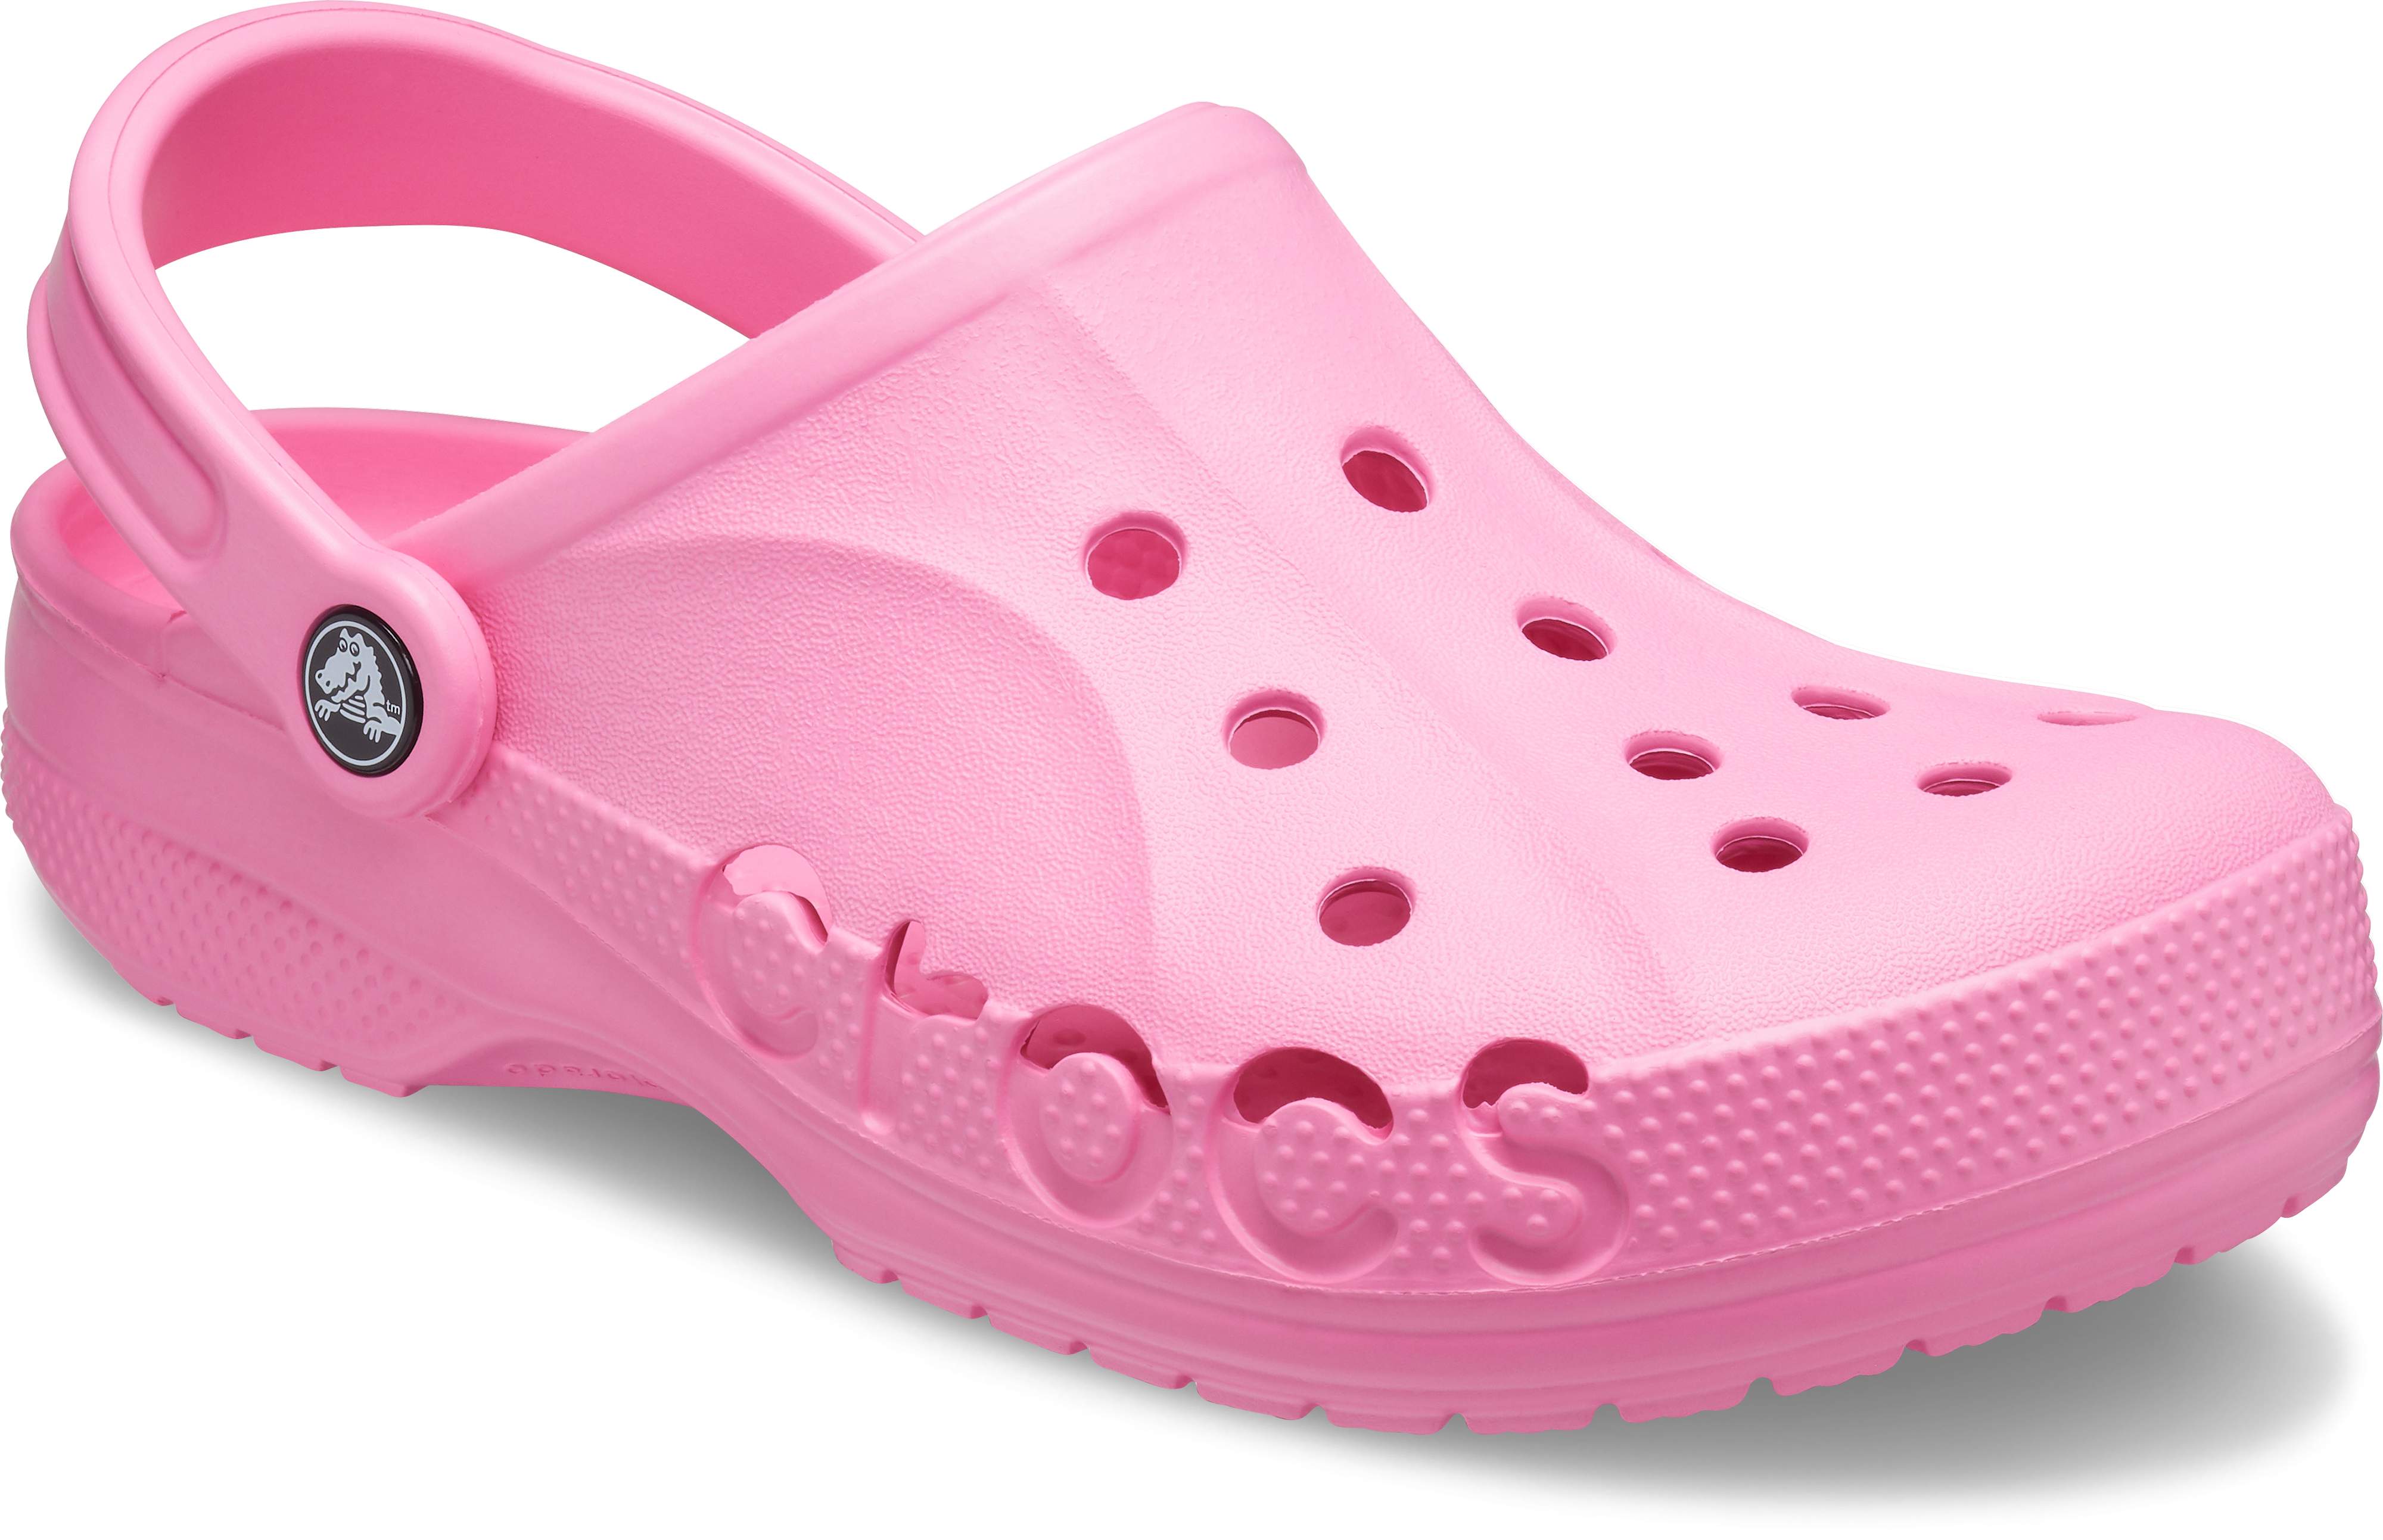 crocs shoes uk